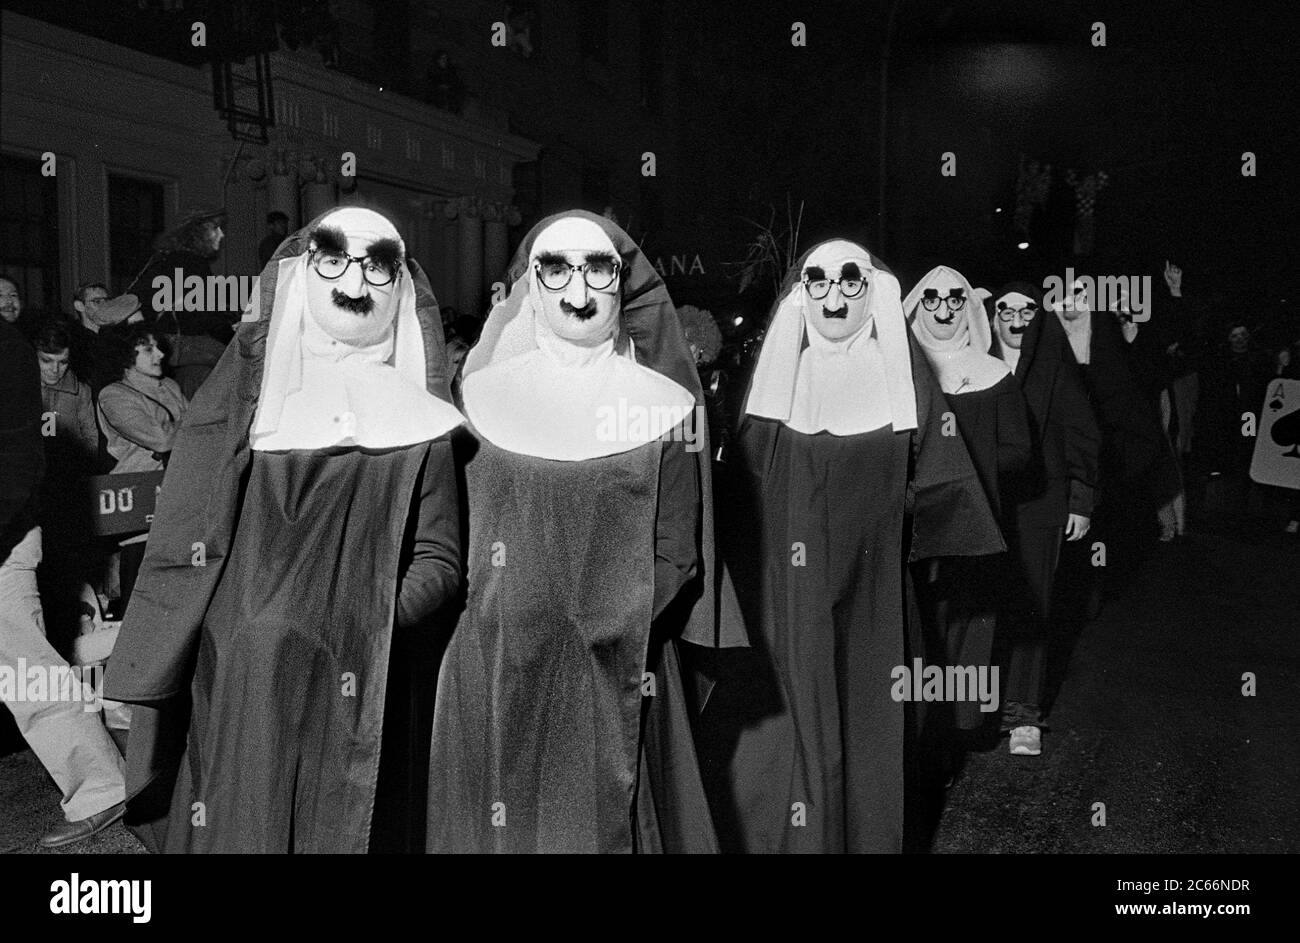 Monache con Groucho annuisce alla Greenwich Village Halloween Parade, New York City, USA negli anni '80 fotografate con film in bianco e nero di notte. Foto Stock